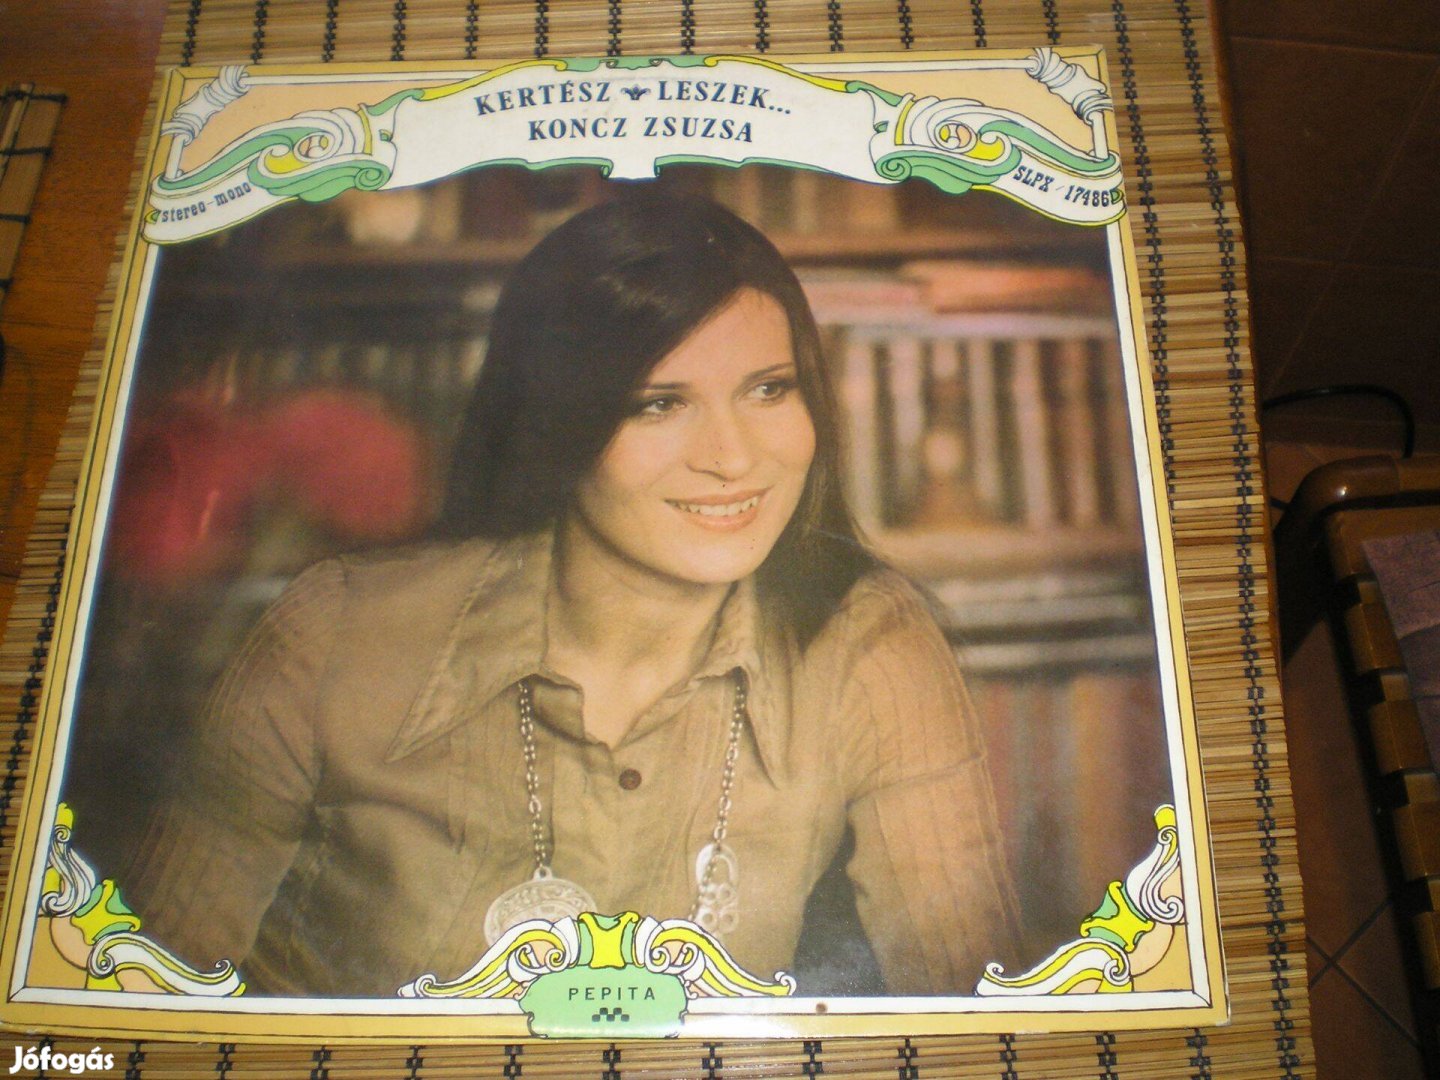 Koncz Zsuzsa Kertész leszek bakelit lemez LP 1975